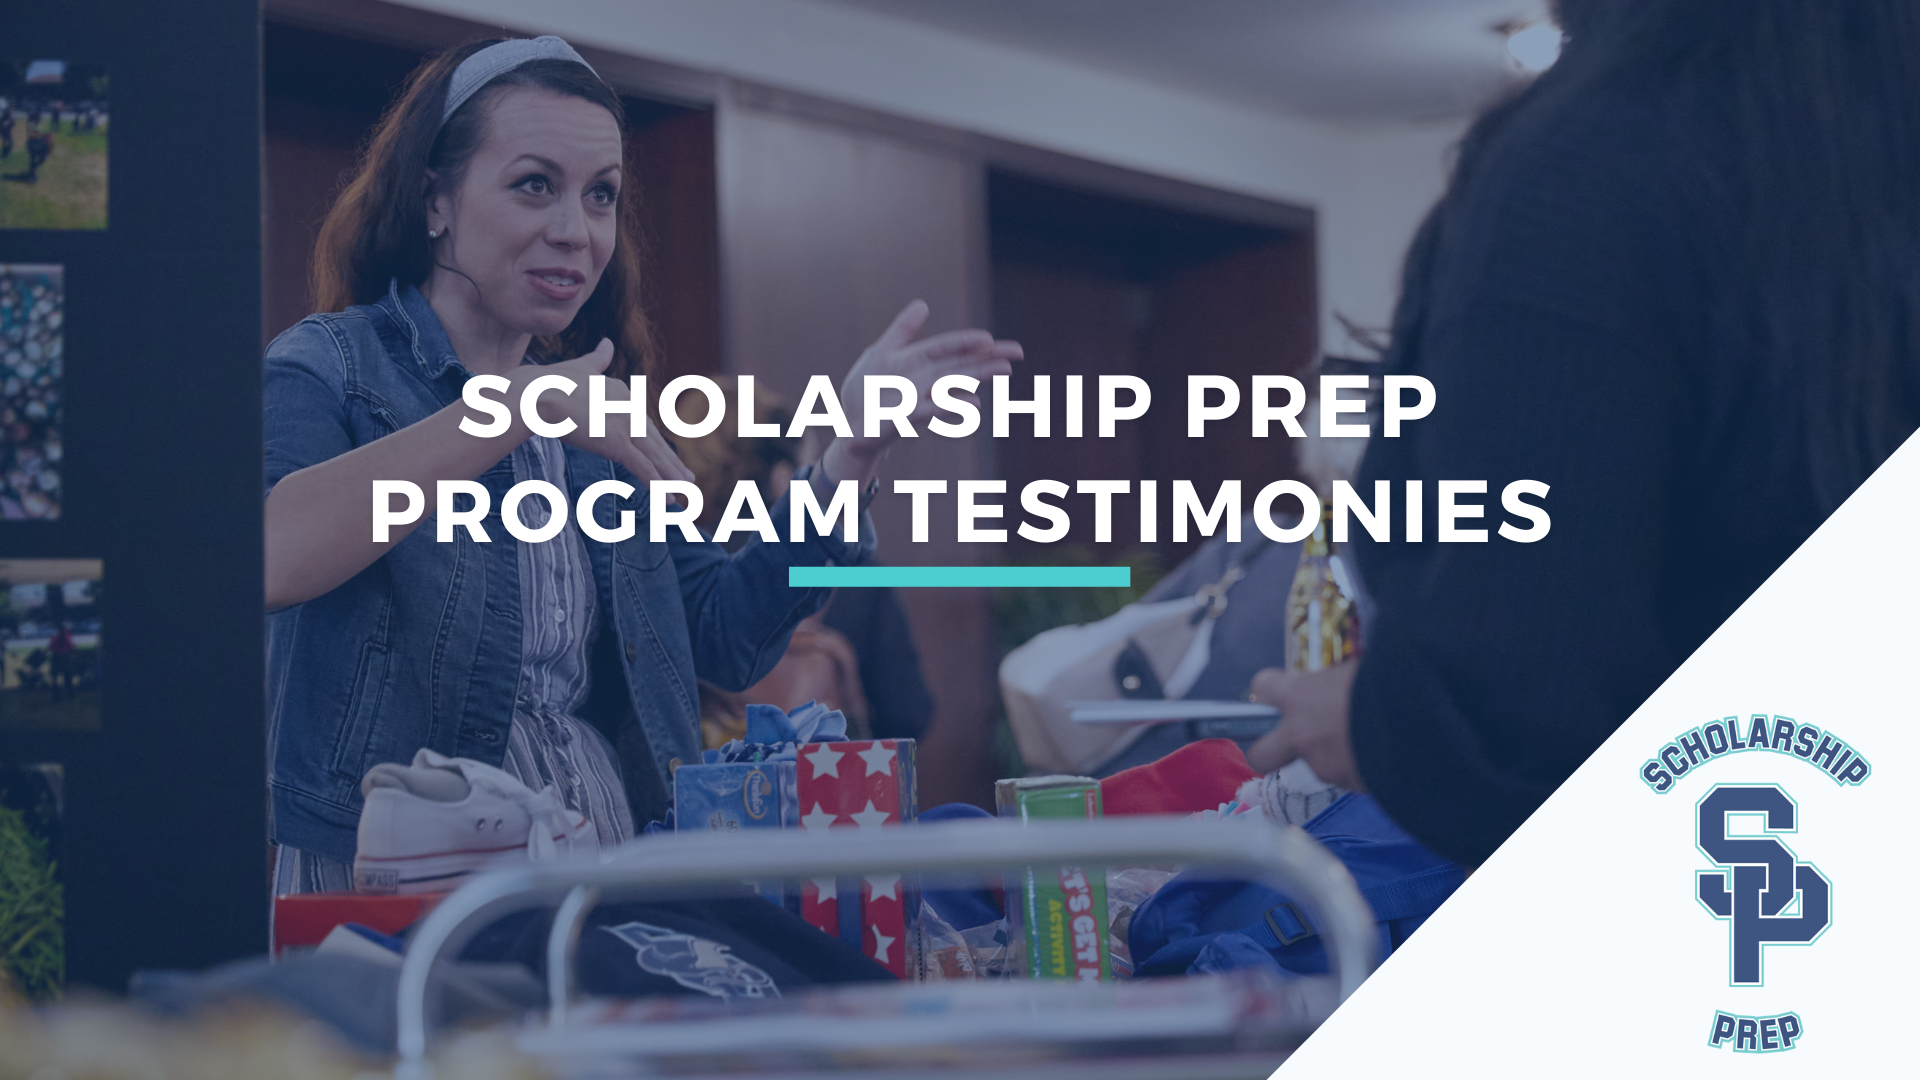 [Video] - Scholarship Prep Proram Testimonies